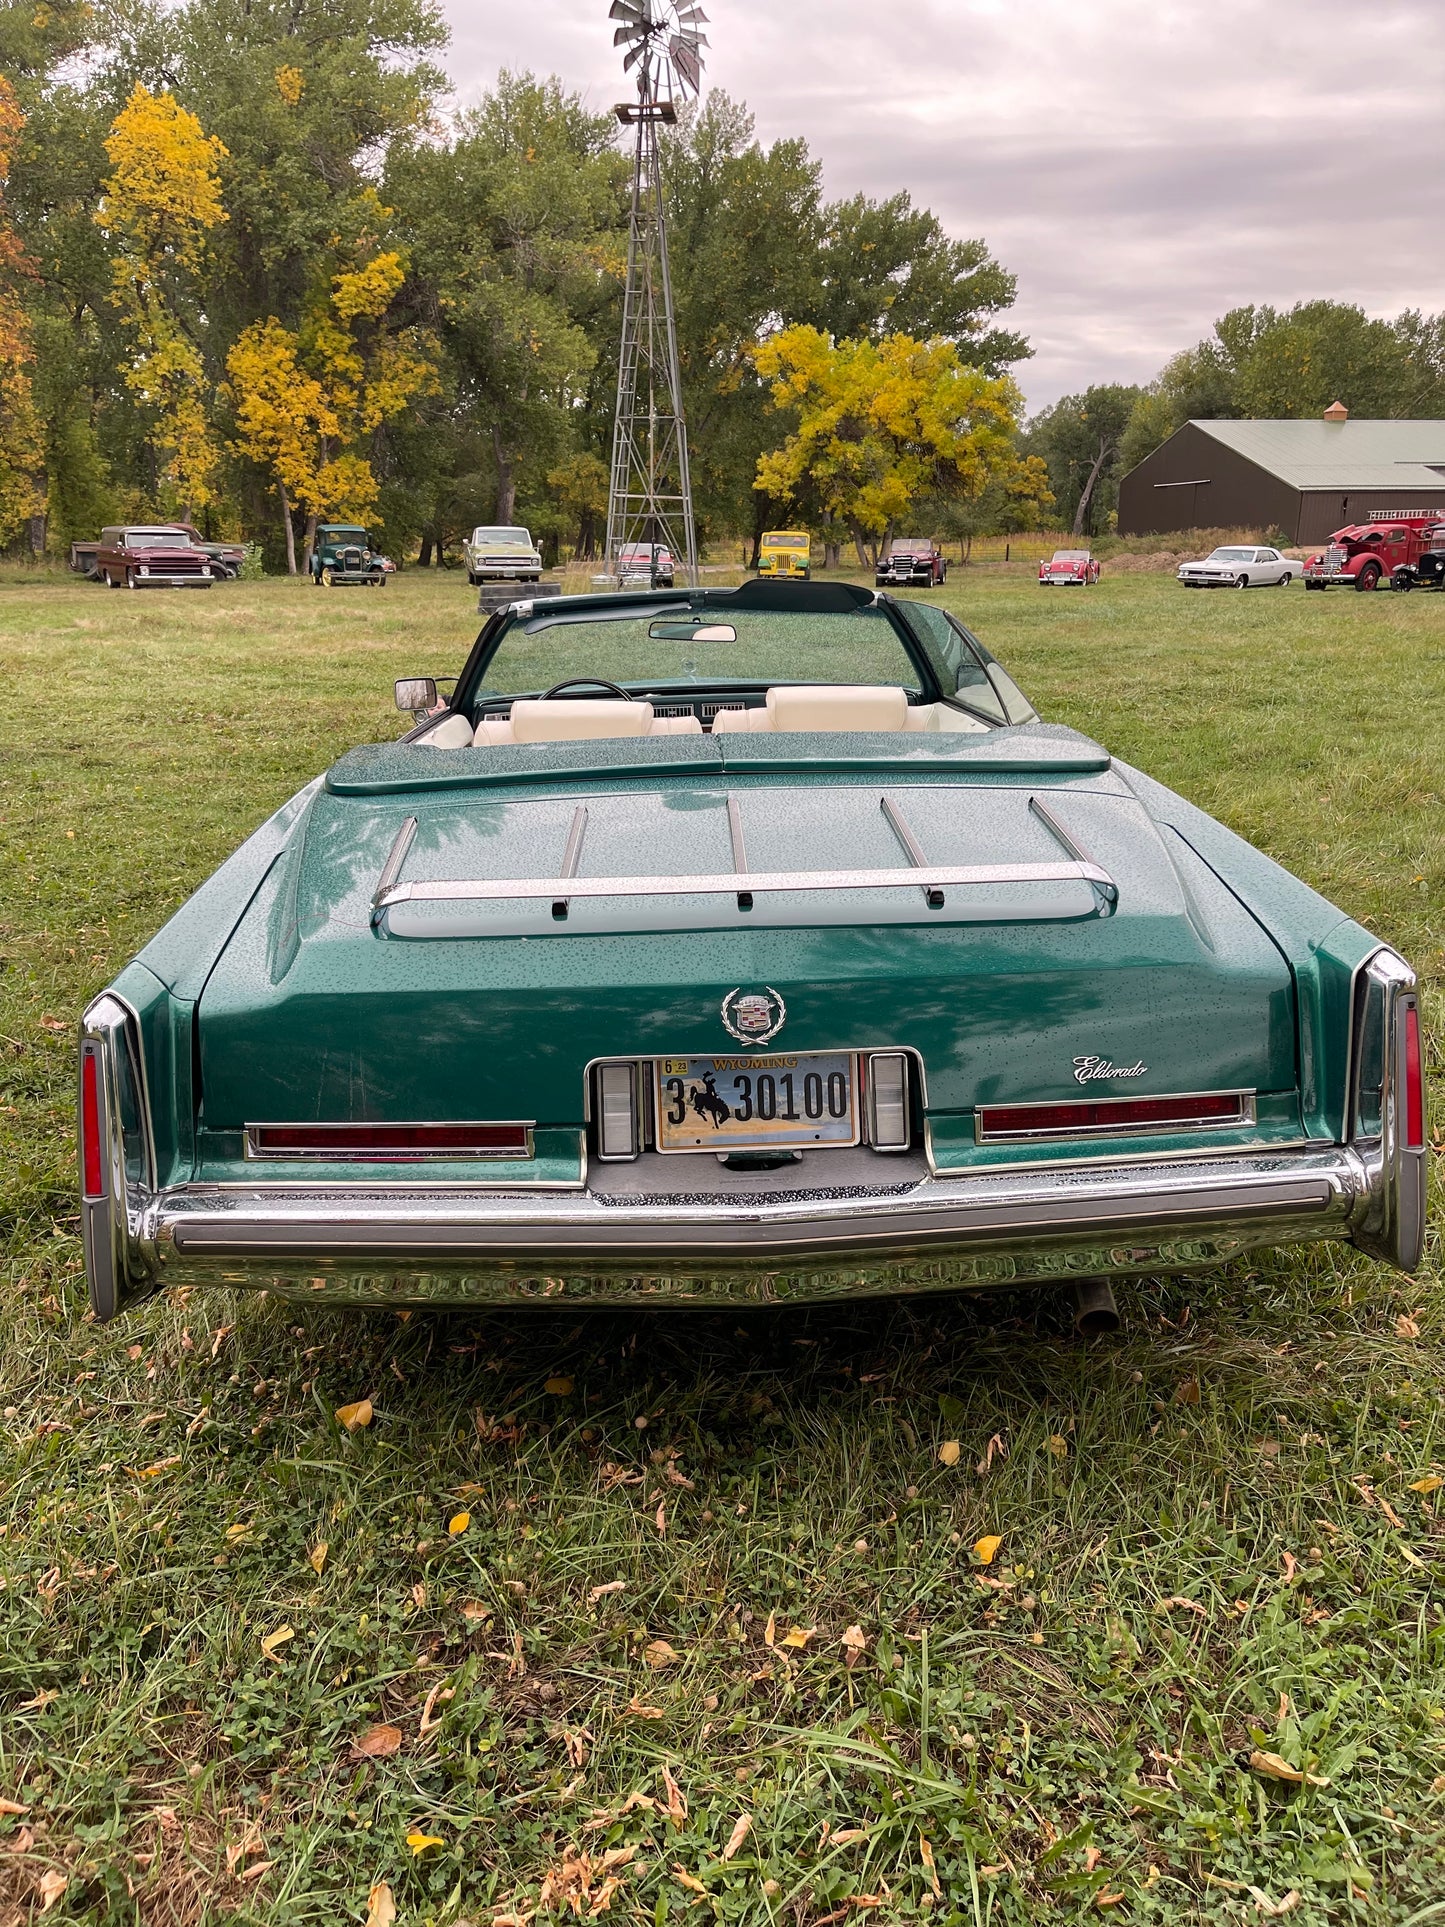 1976 Cadillac El Dorado convertible